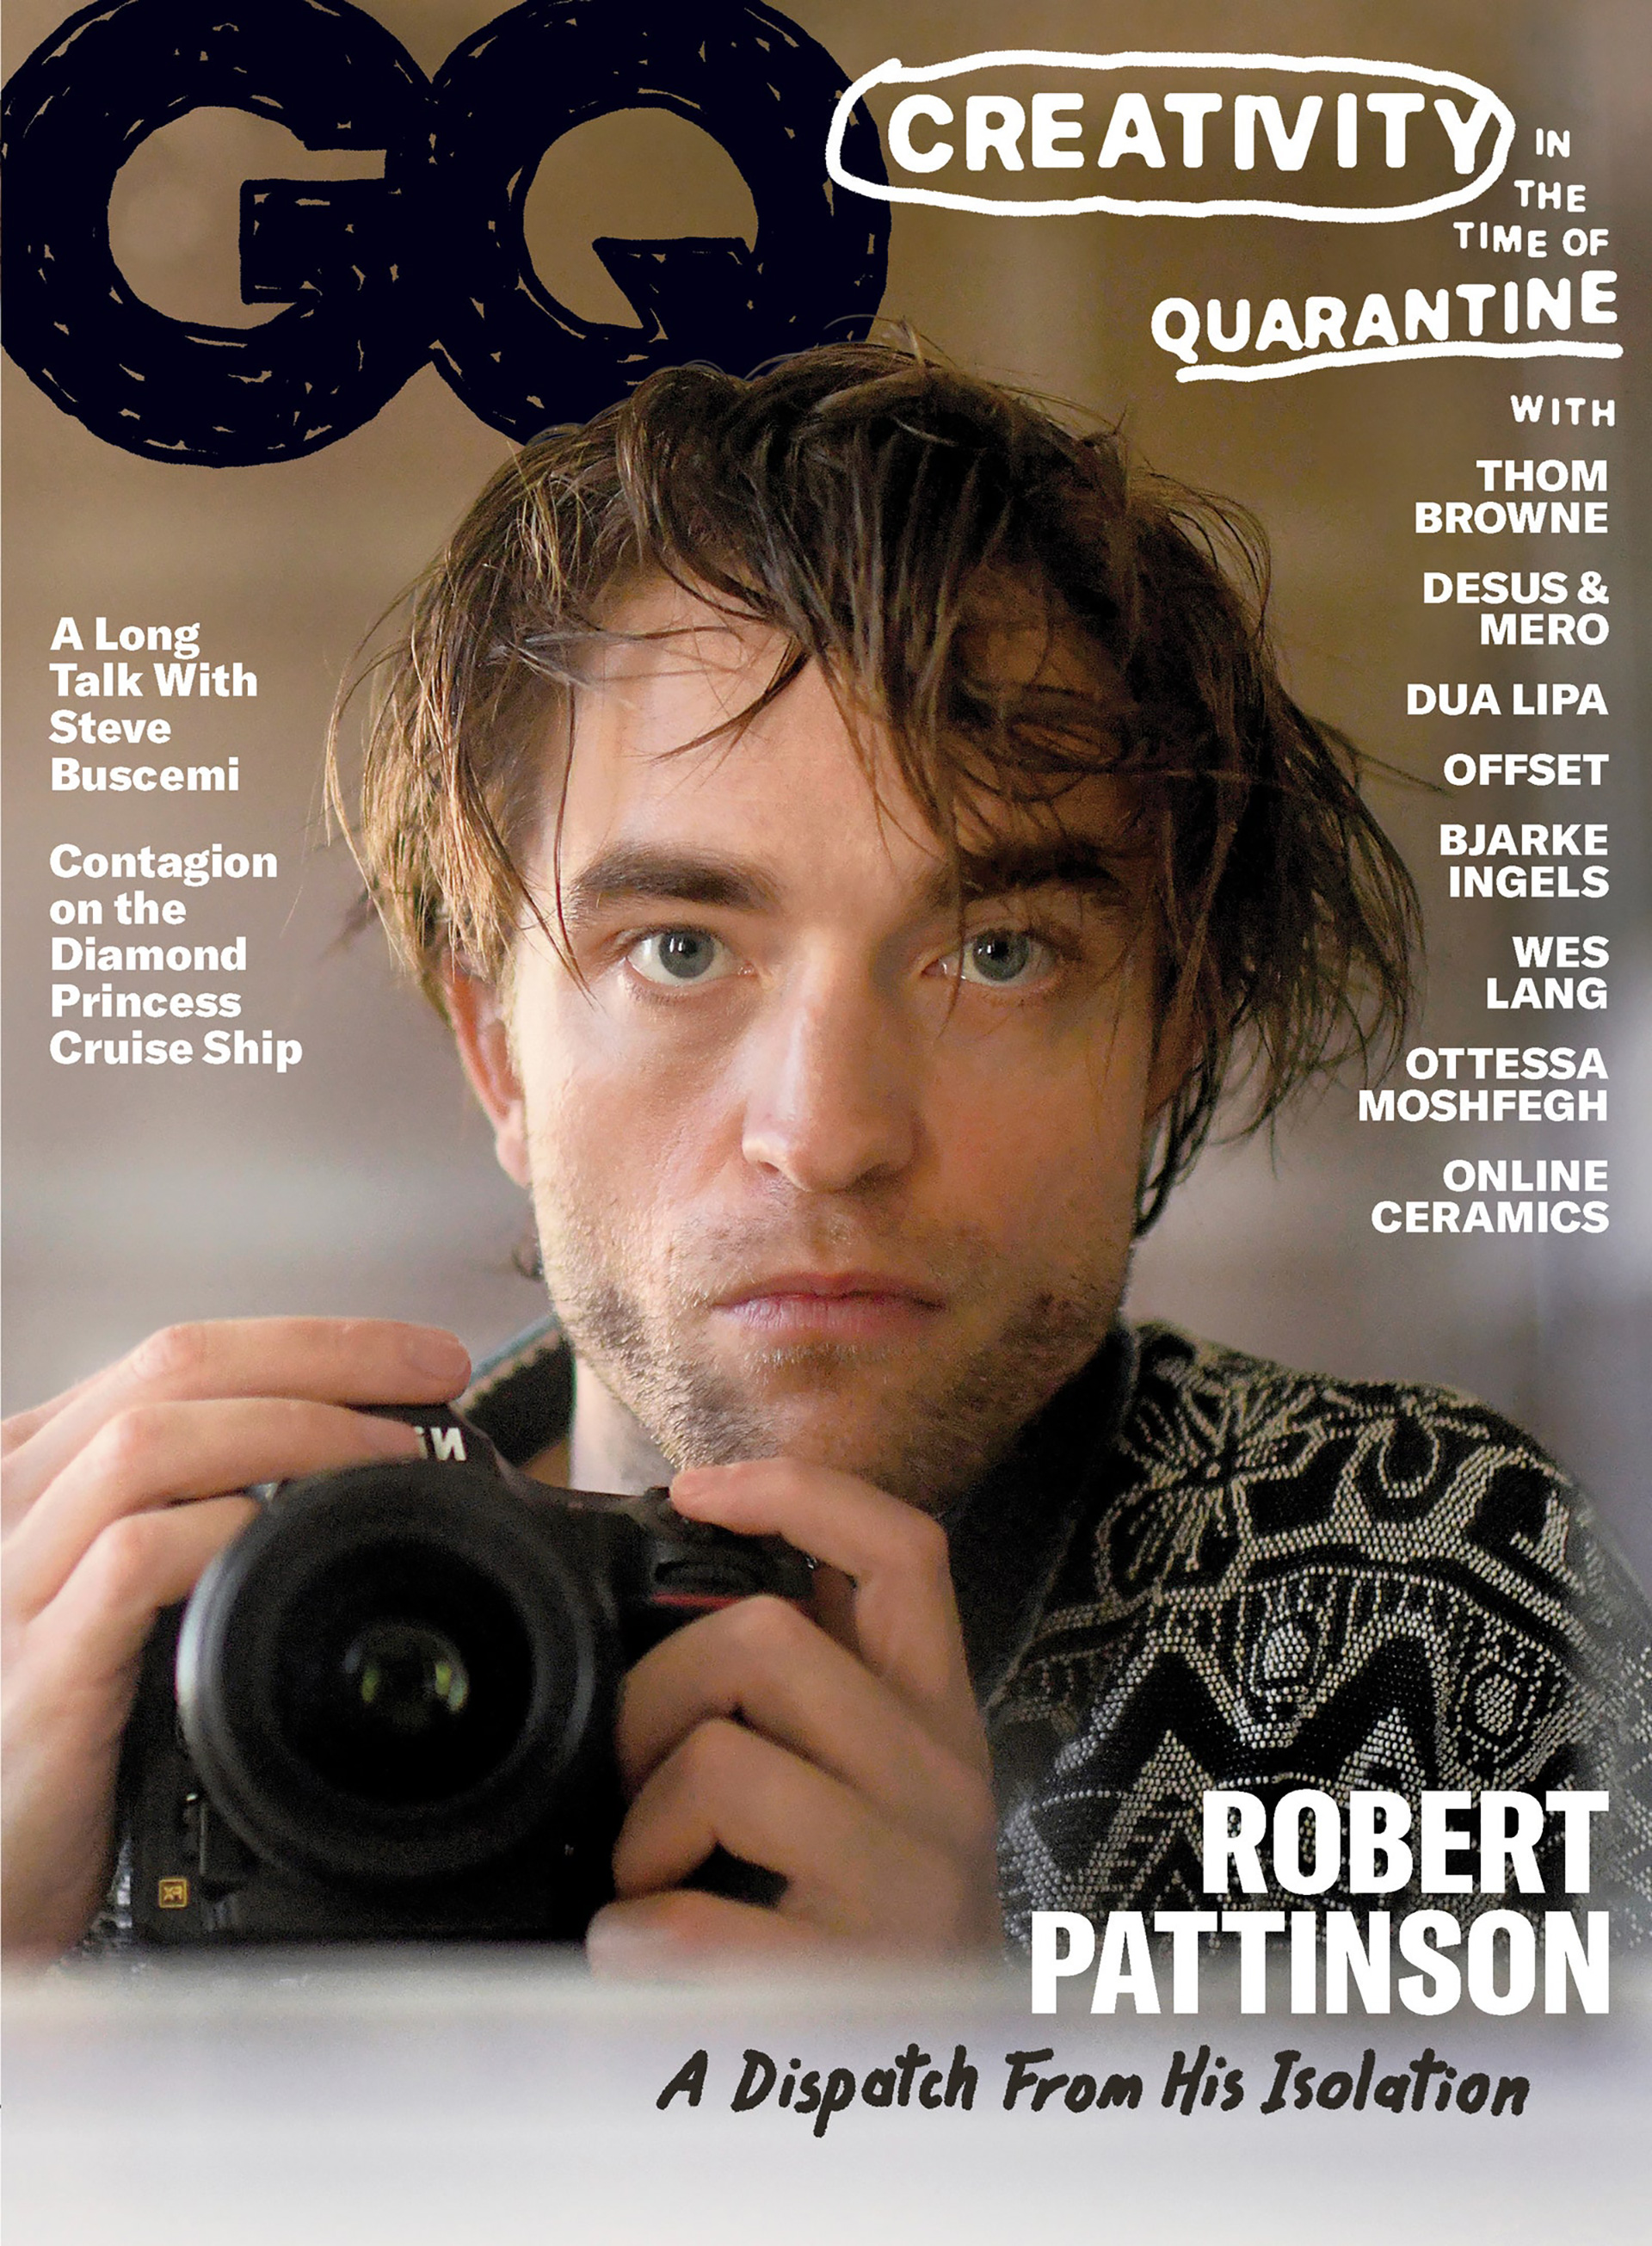 El actor Robert Pattinson se convierte en tendencia tras publicarse una serie de sus autorretratos, en la revista GQ, titulada"A dispatch From His Isolation".